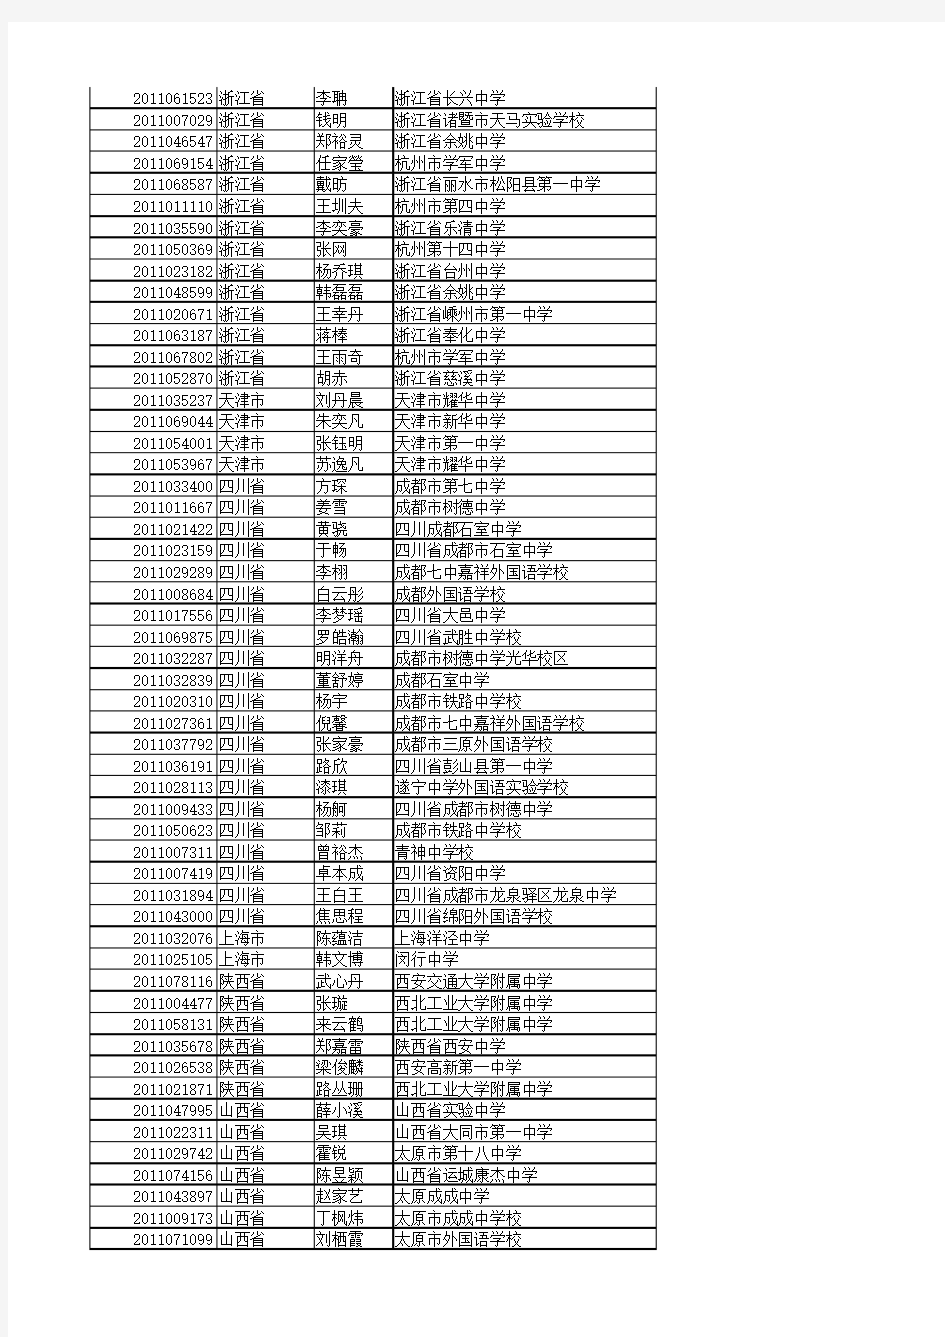 厦门大学2011年自主招生拟录取名单